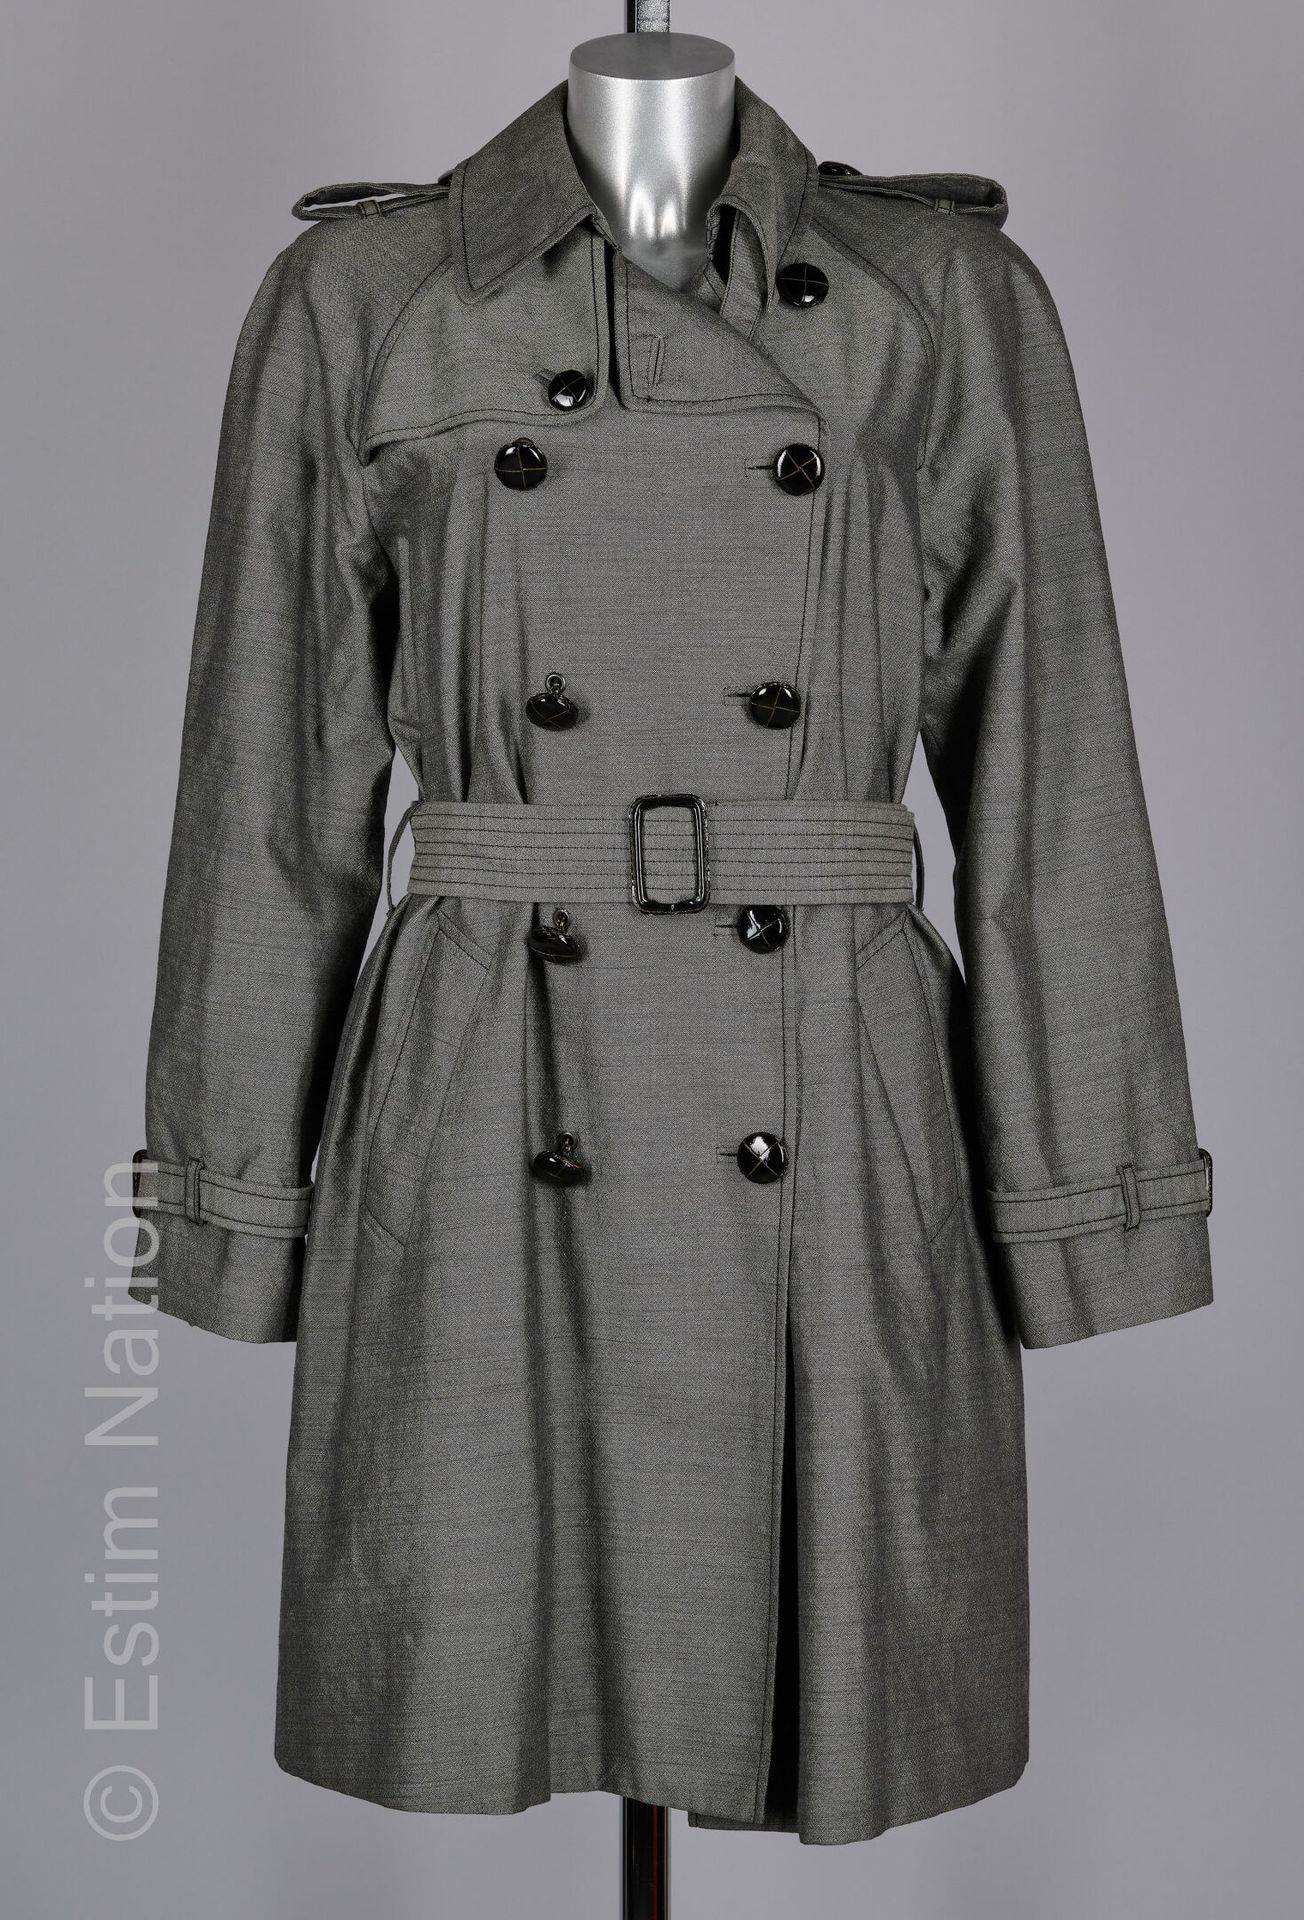 JEAN PAUL GAULTIER FEMME TRENCH en laine chiné gris, double boutonnage en cuir v&hellip;